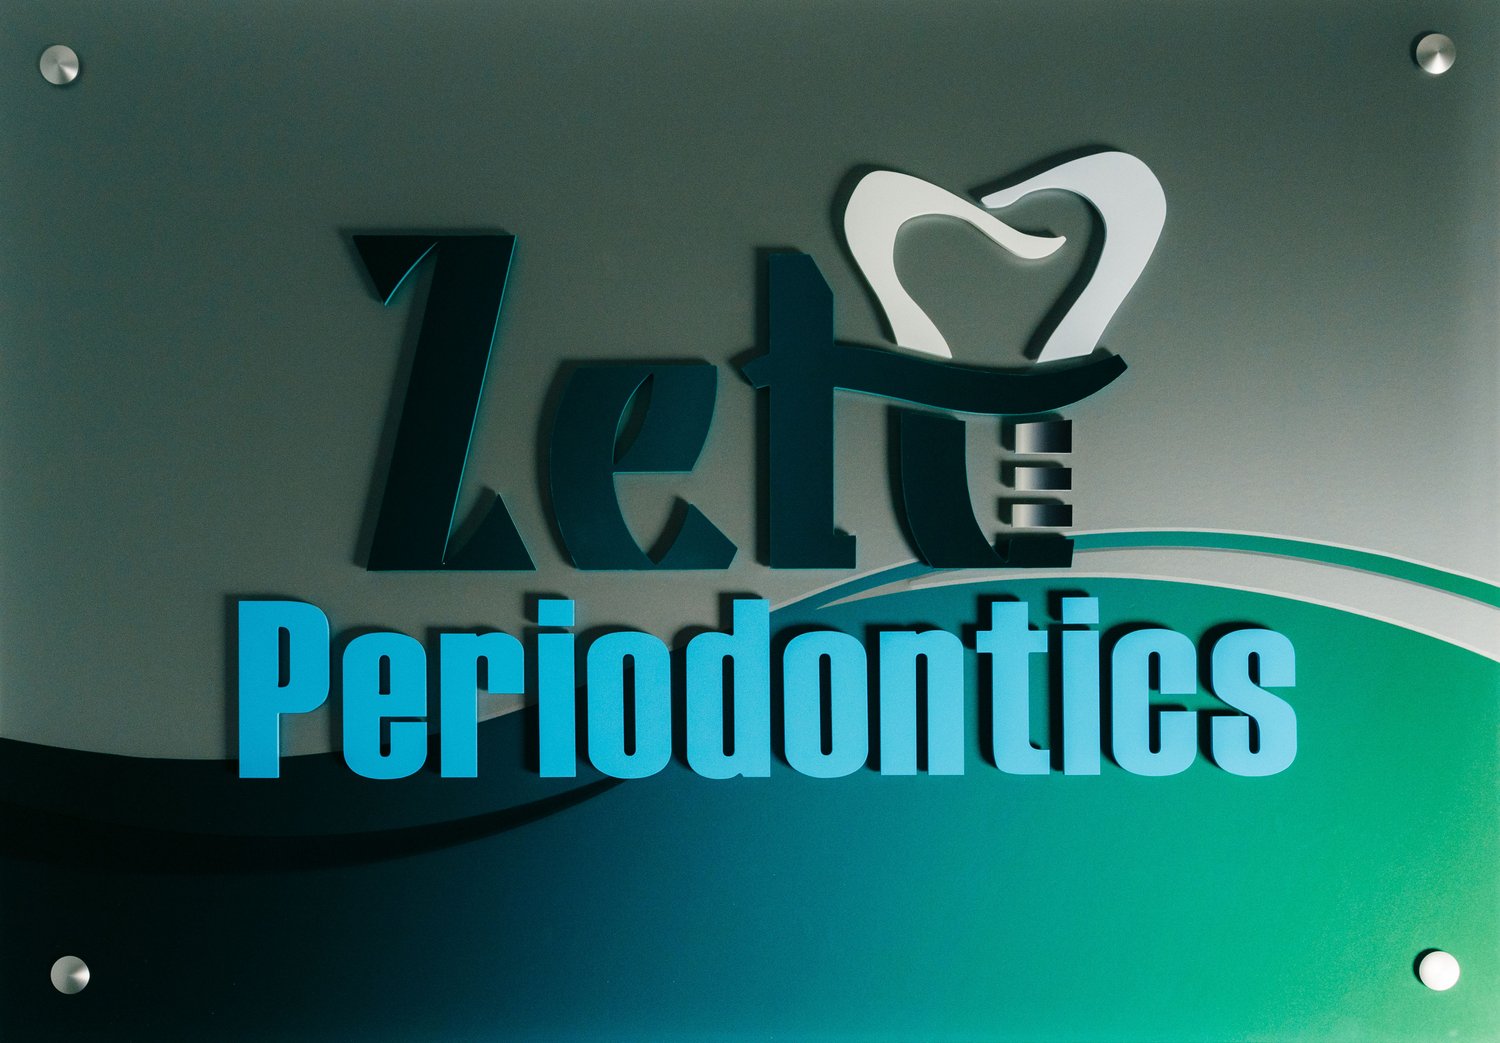 Zetu Periodontics